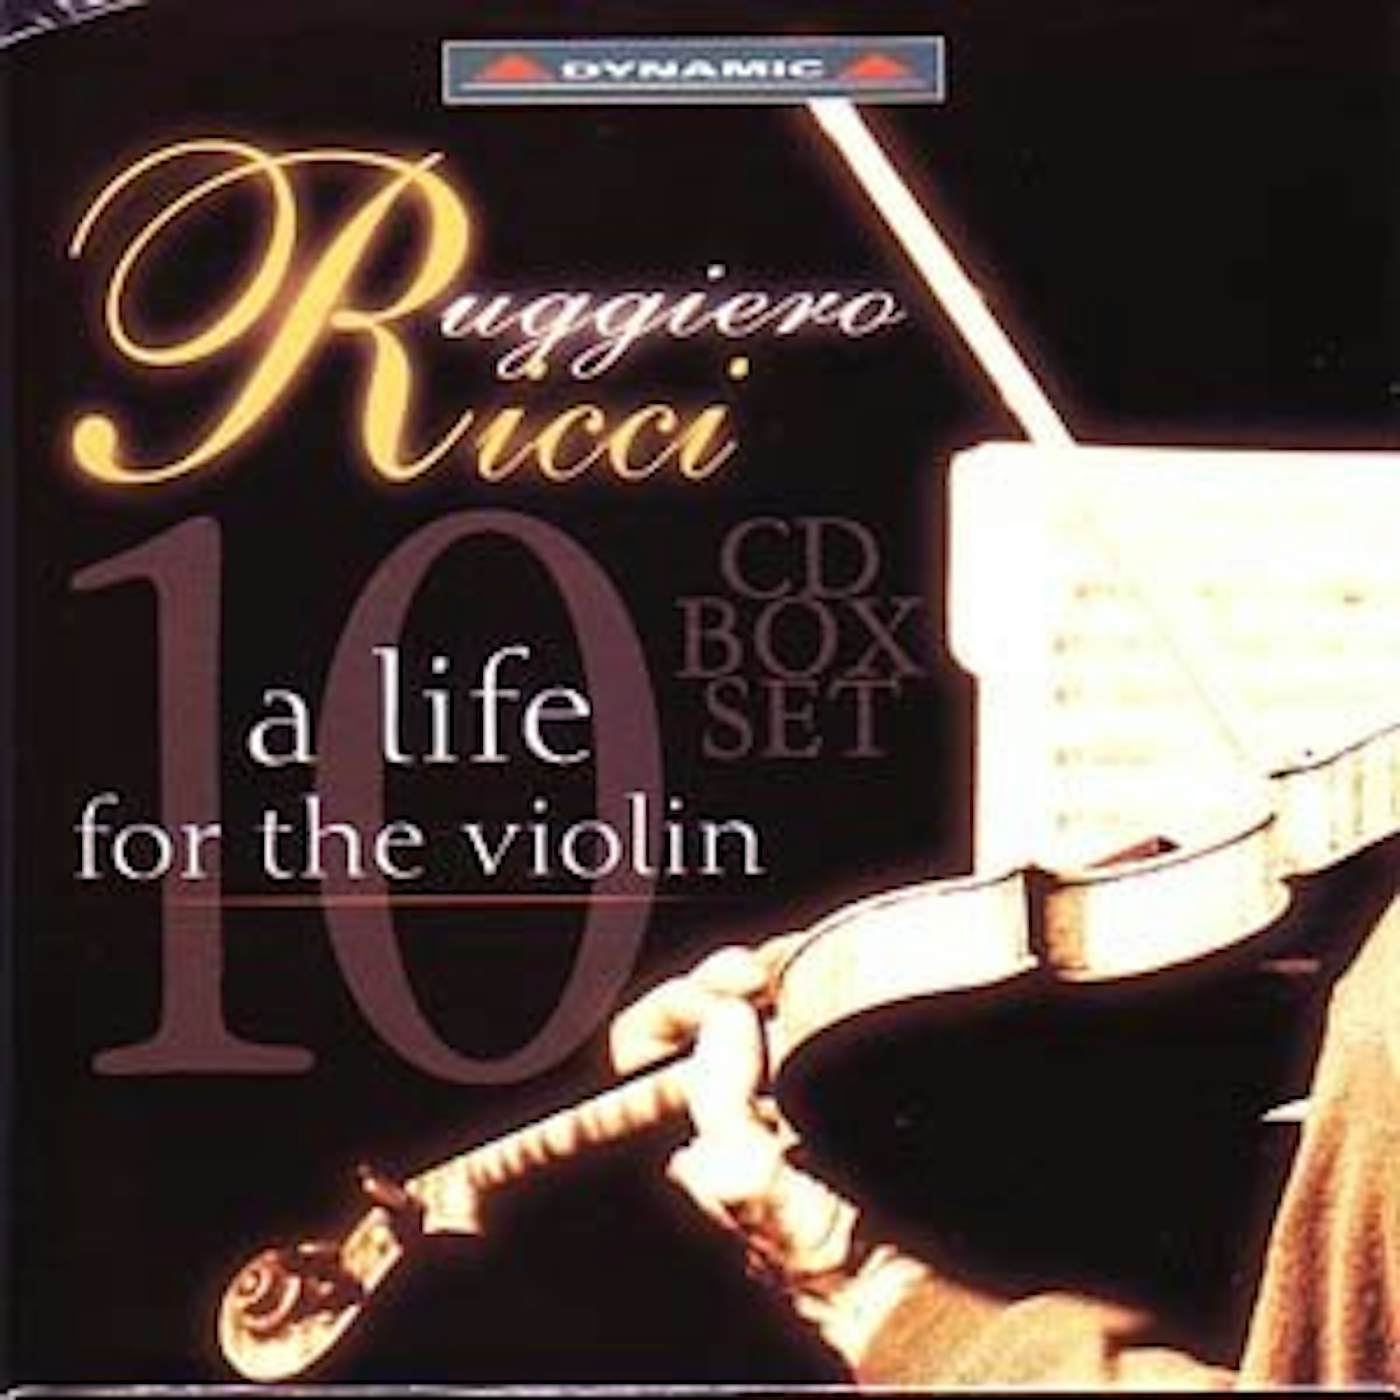 Ruggiero Ricci LIFE FOR THE VIOLIN CD